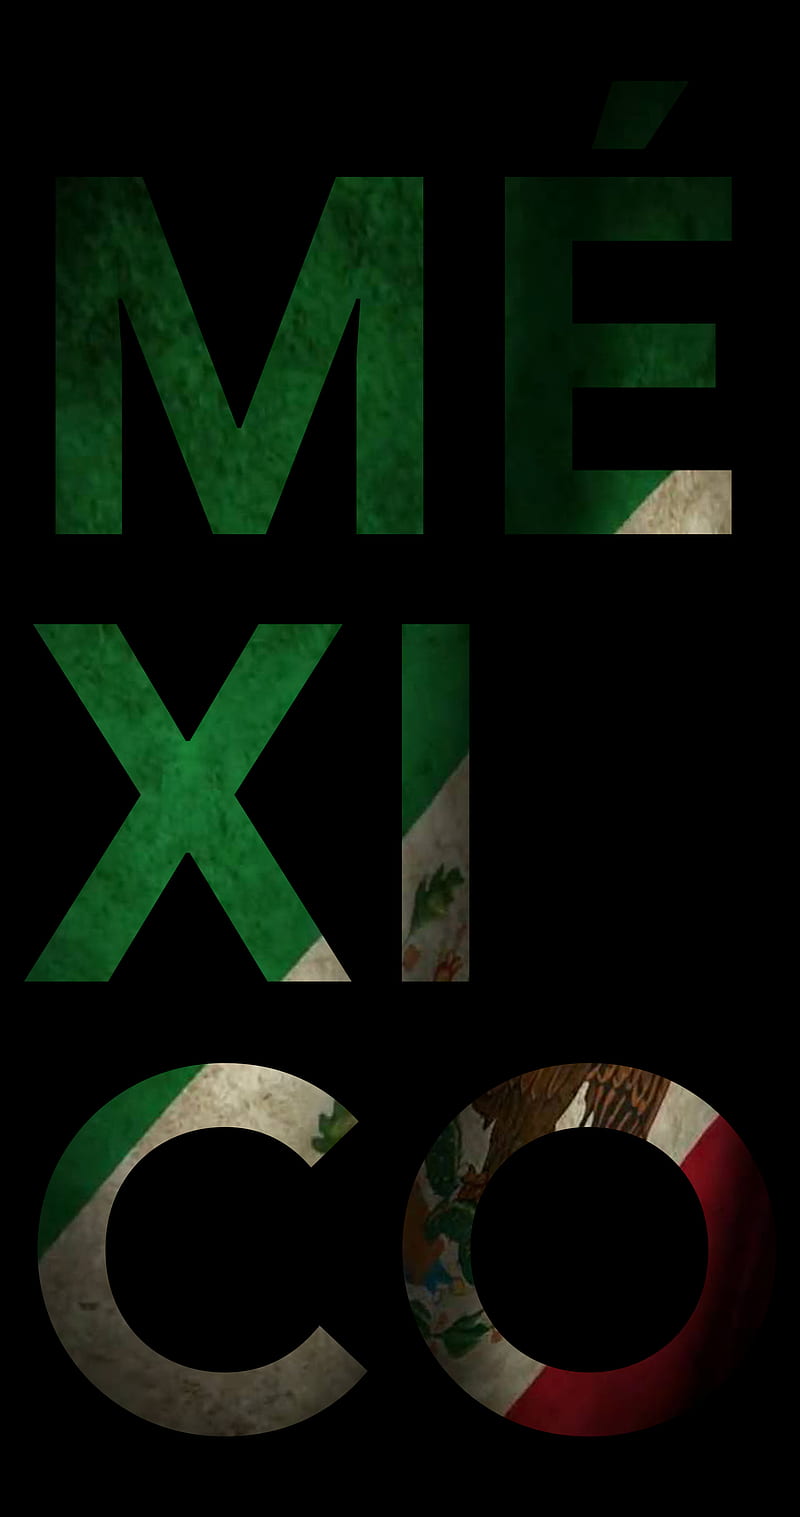 Viva Mexico Images  Free Download on Freepik